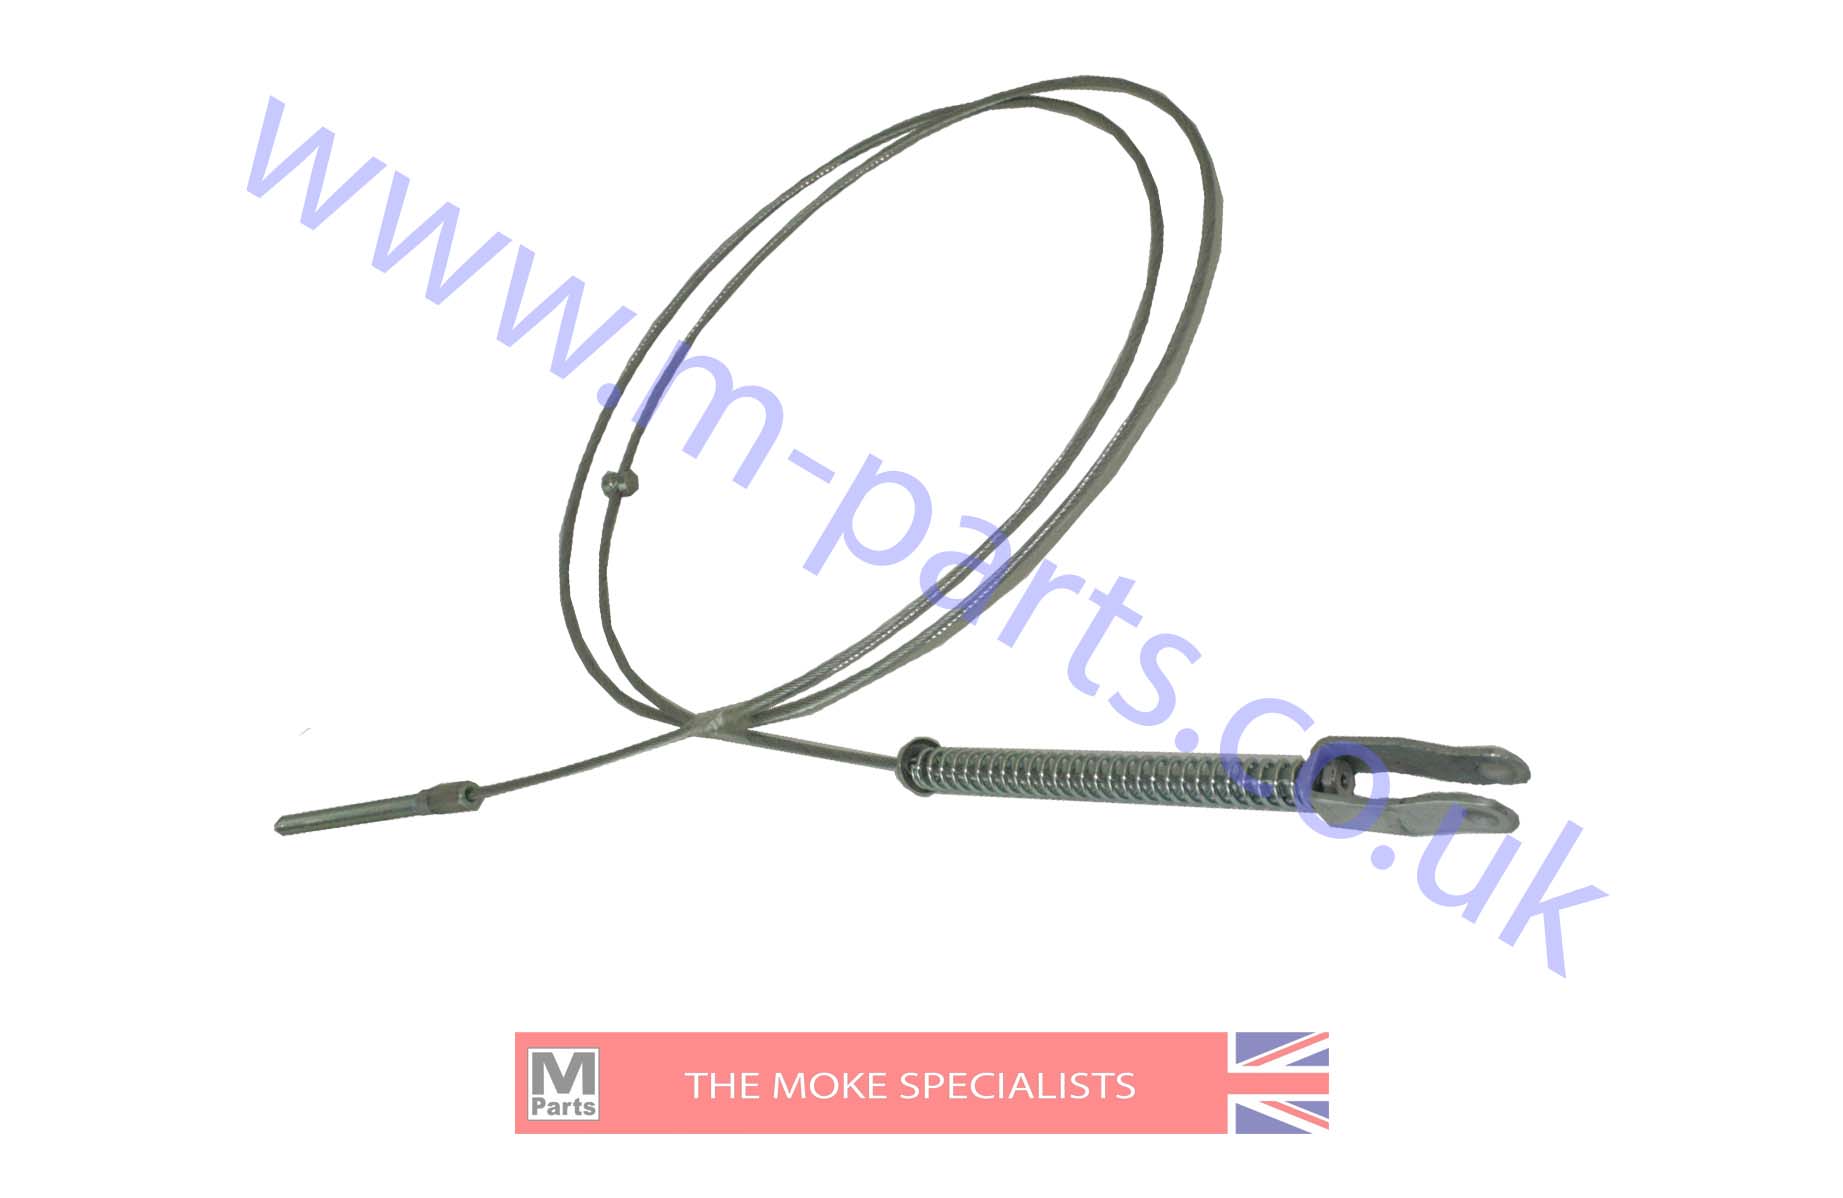 5. English handbrake cables